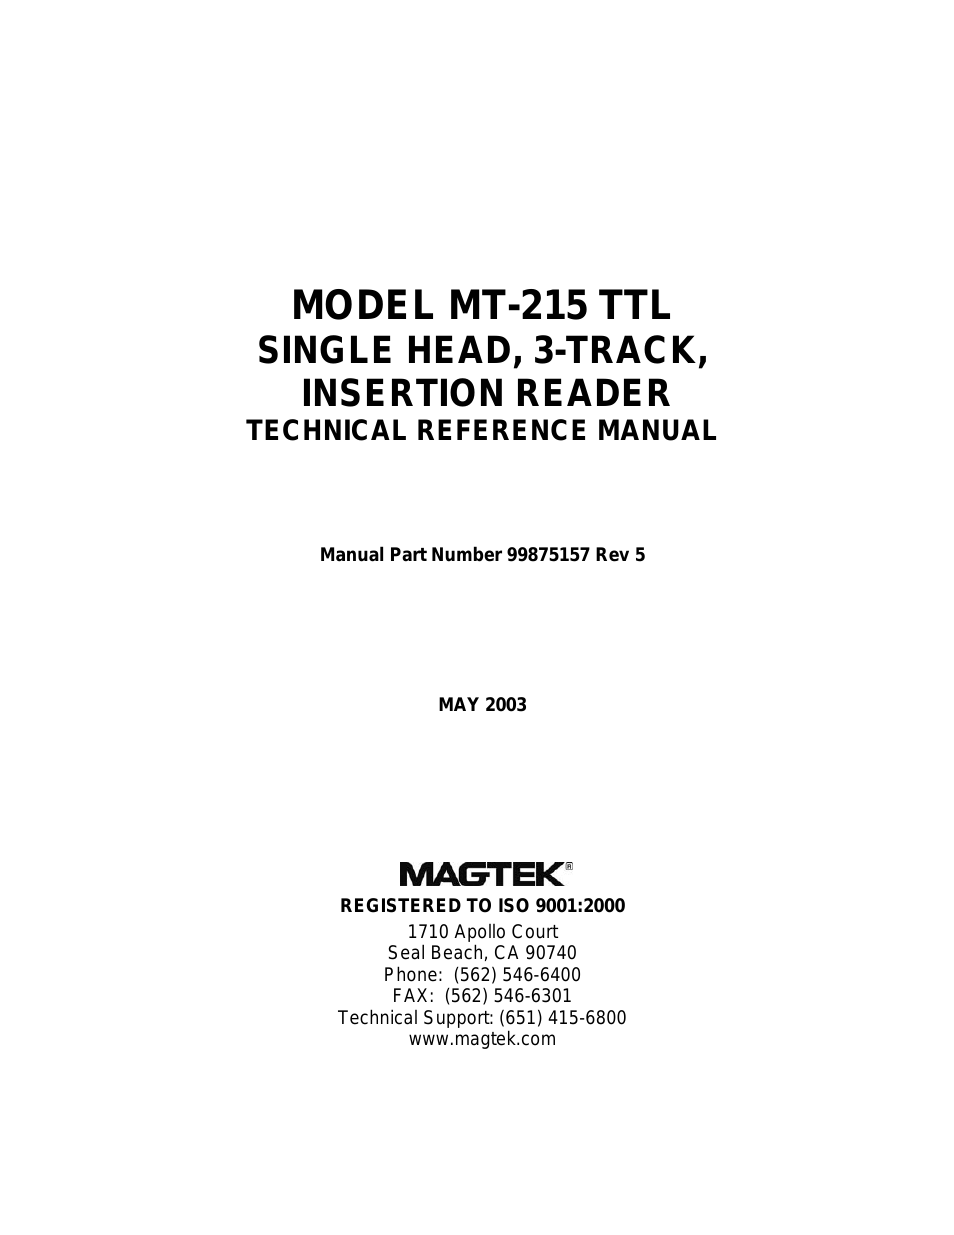 MT-215 TTL SINGLE HEAD, 3-TRACK